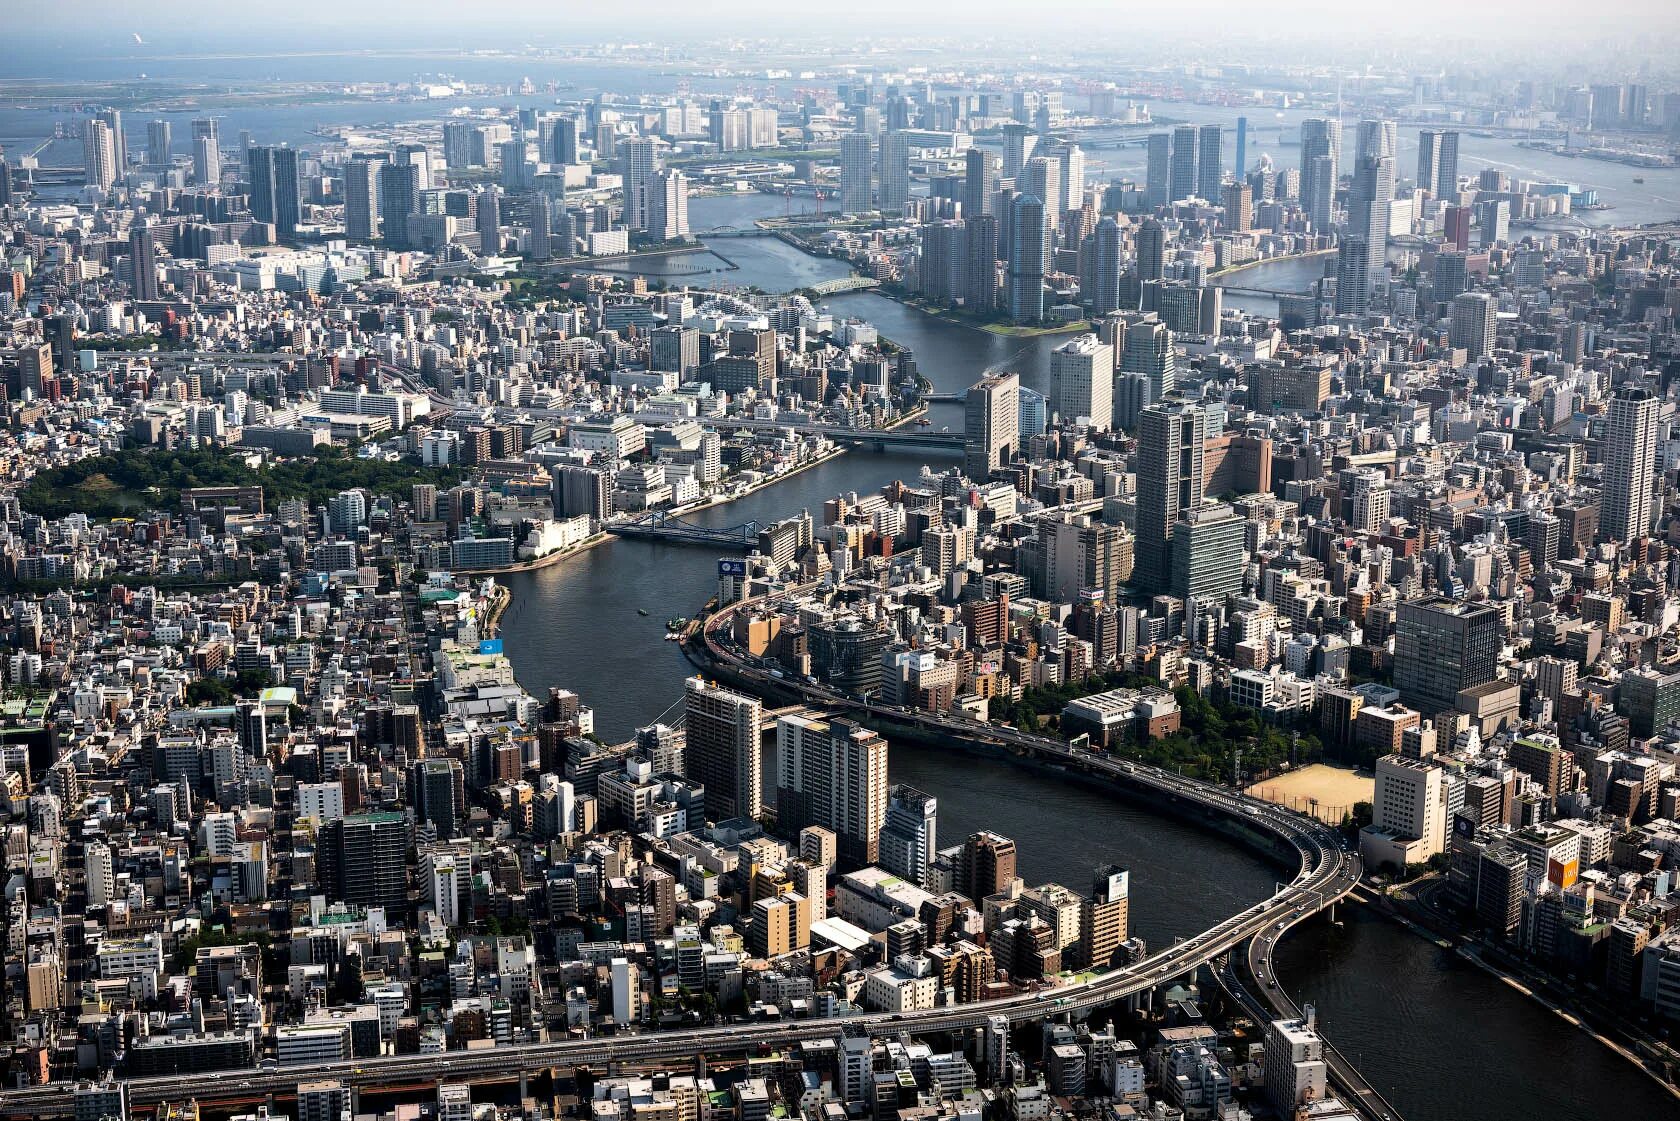 Япония крупнейший в мире. Агломерация Токио. Токио столица Японии. Токио Йокогама агломерация. Токио с высоты птичьего полета.